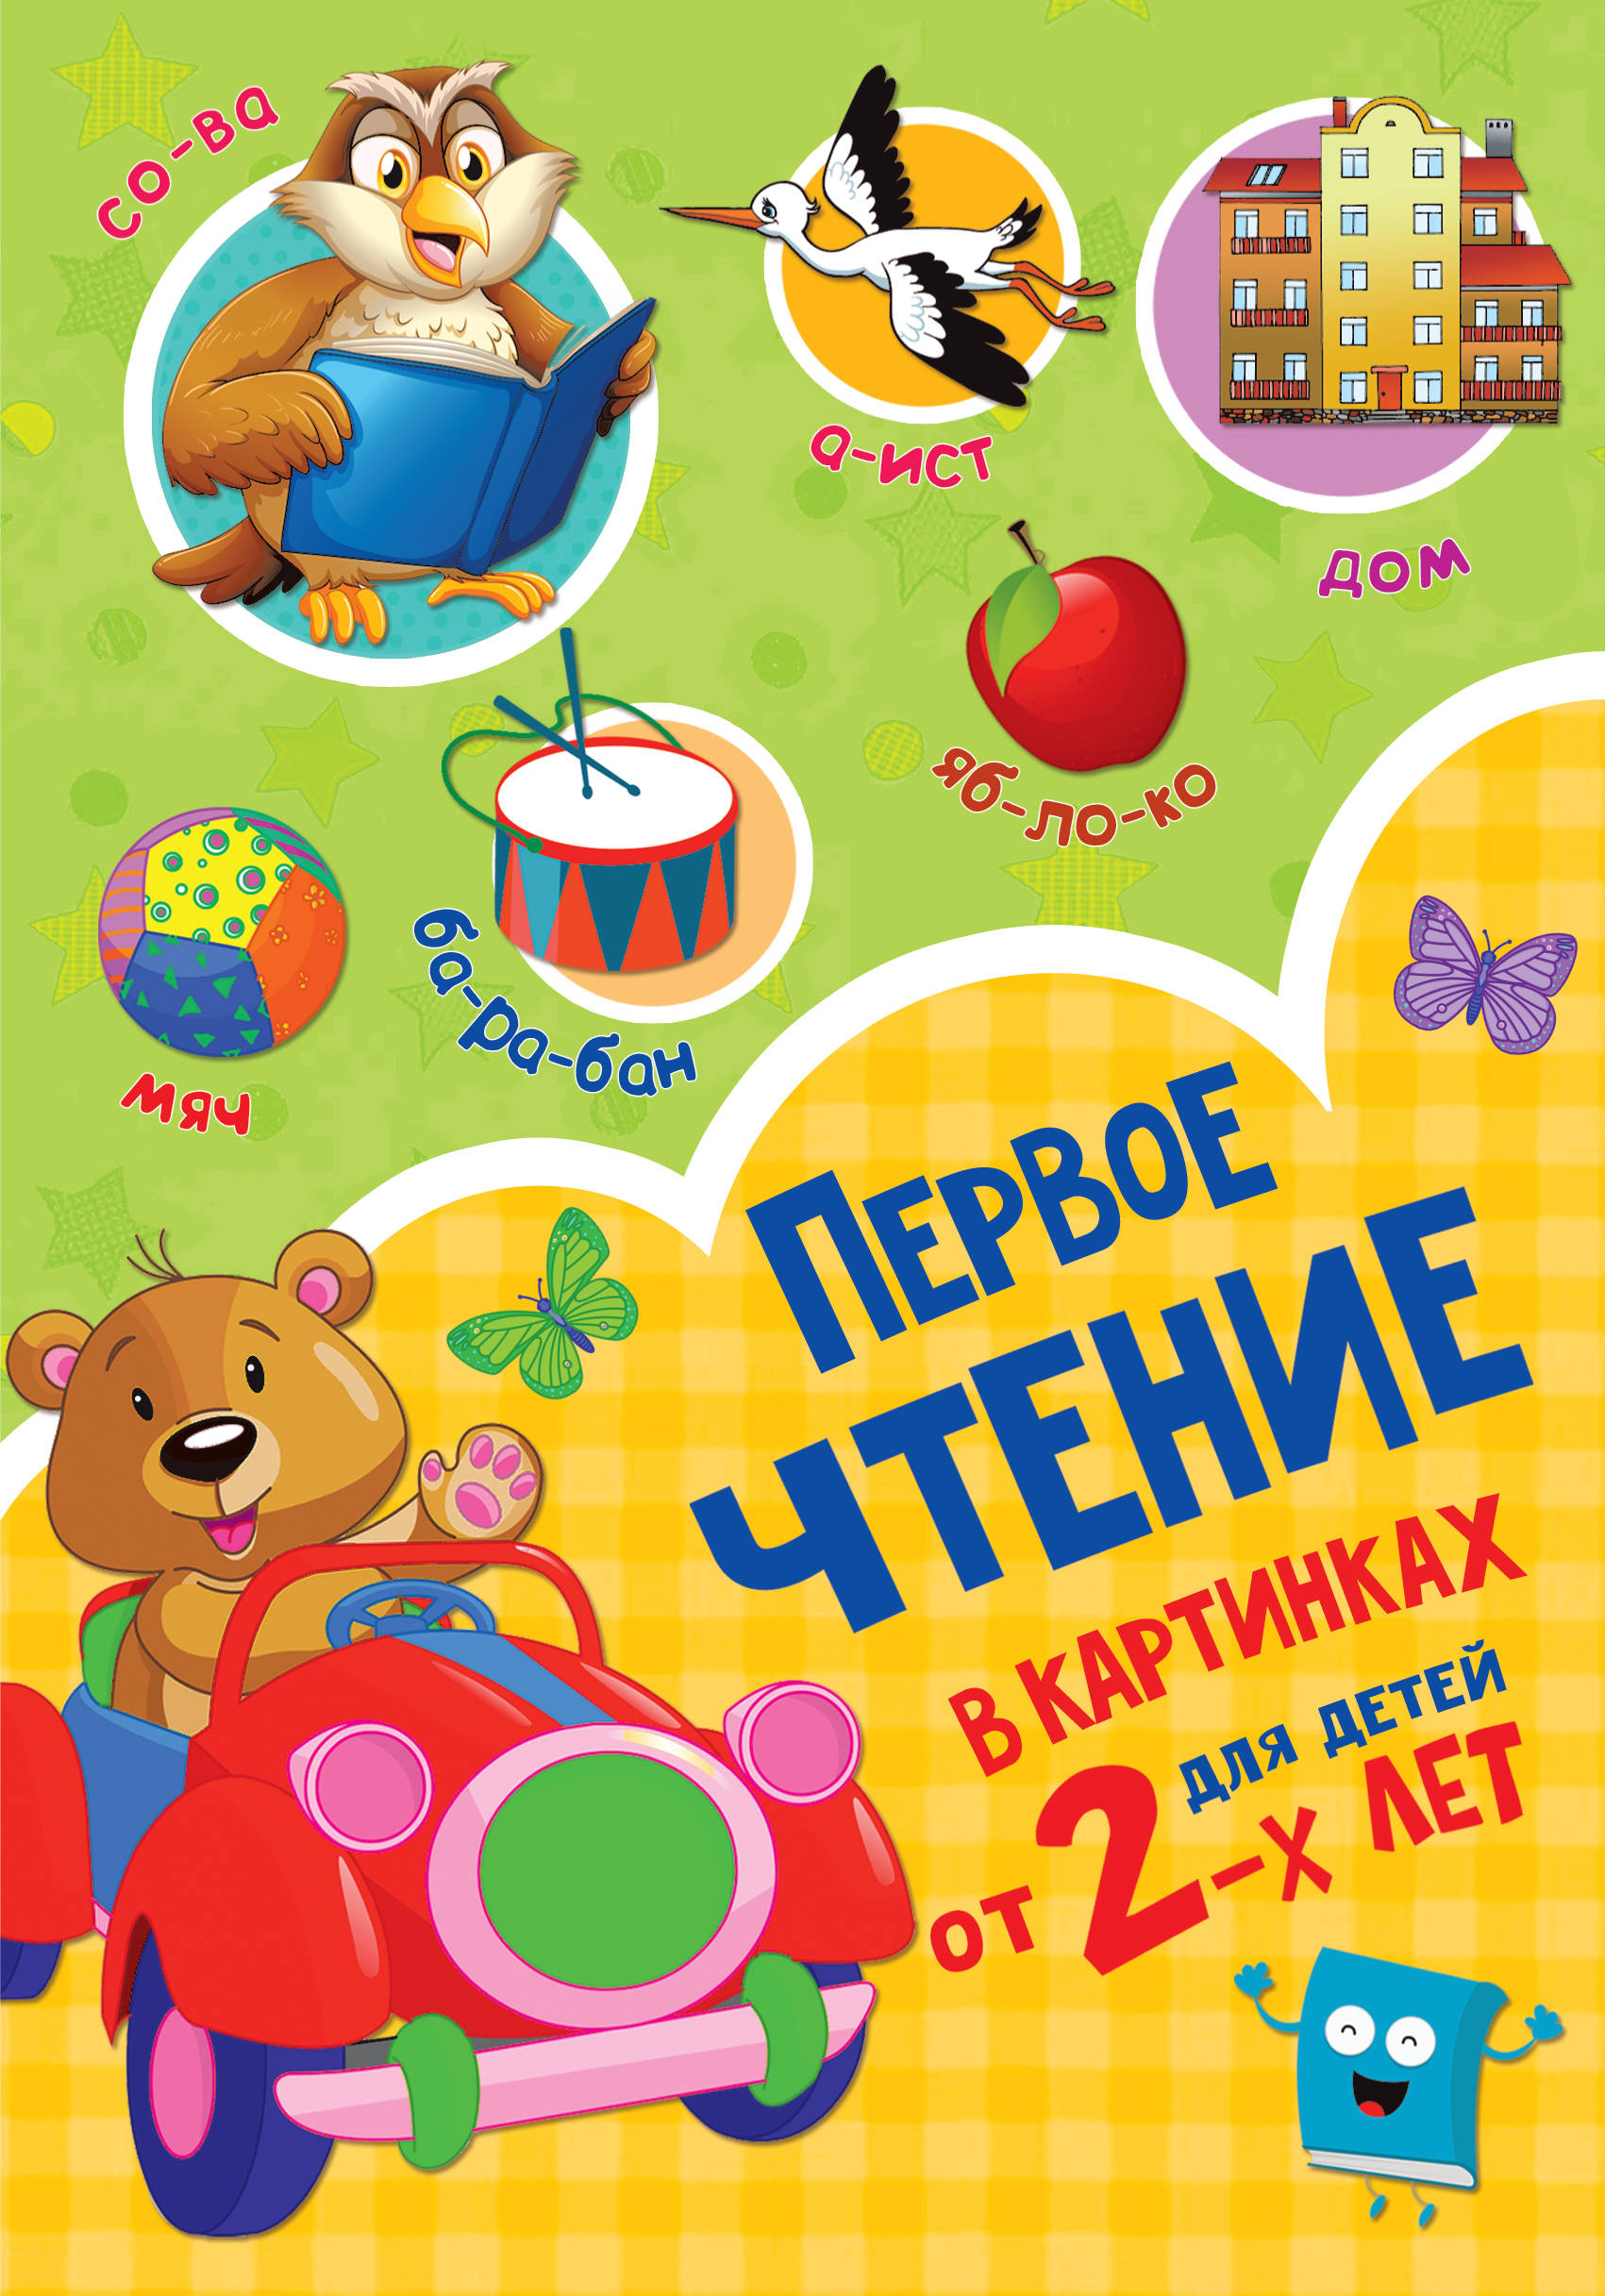 Дмитриева Валентина Геннадьевна Первое чтение в картинках для малышей от 2-х лет